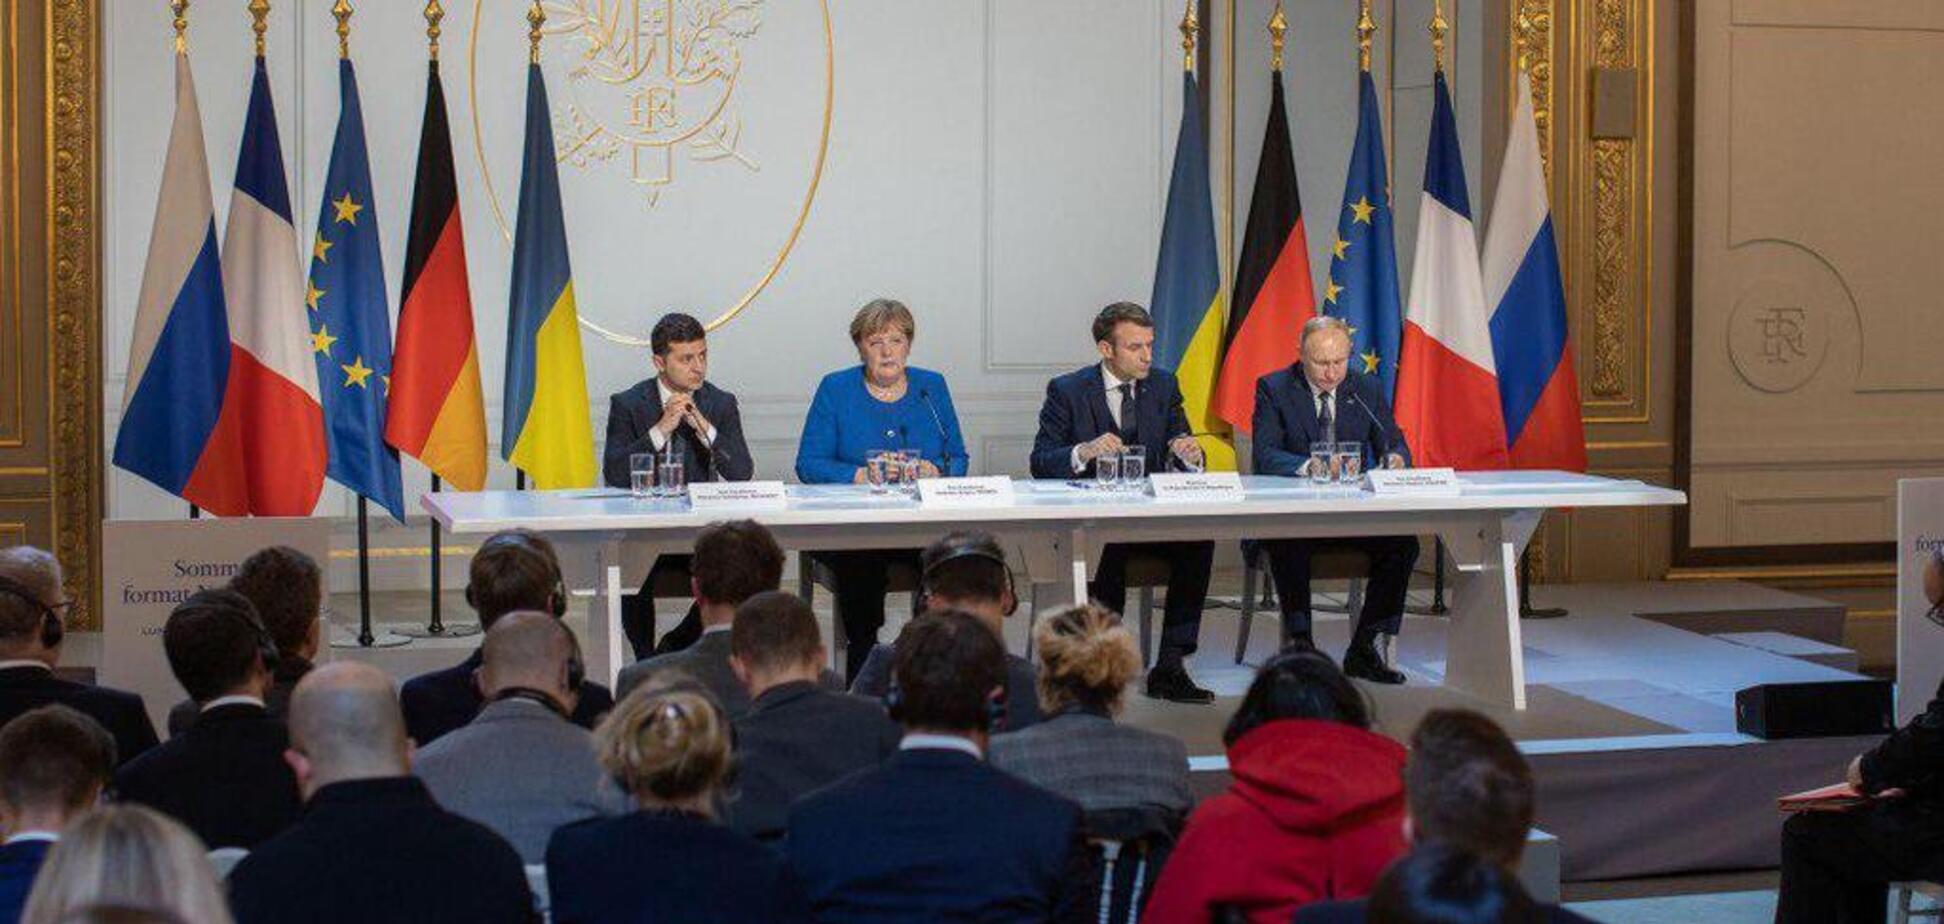 Зеленский, Путин, Меркель и Макрон дали пресс-конференцию: все подробности, фото и видео